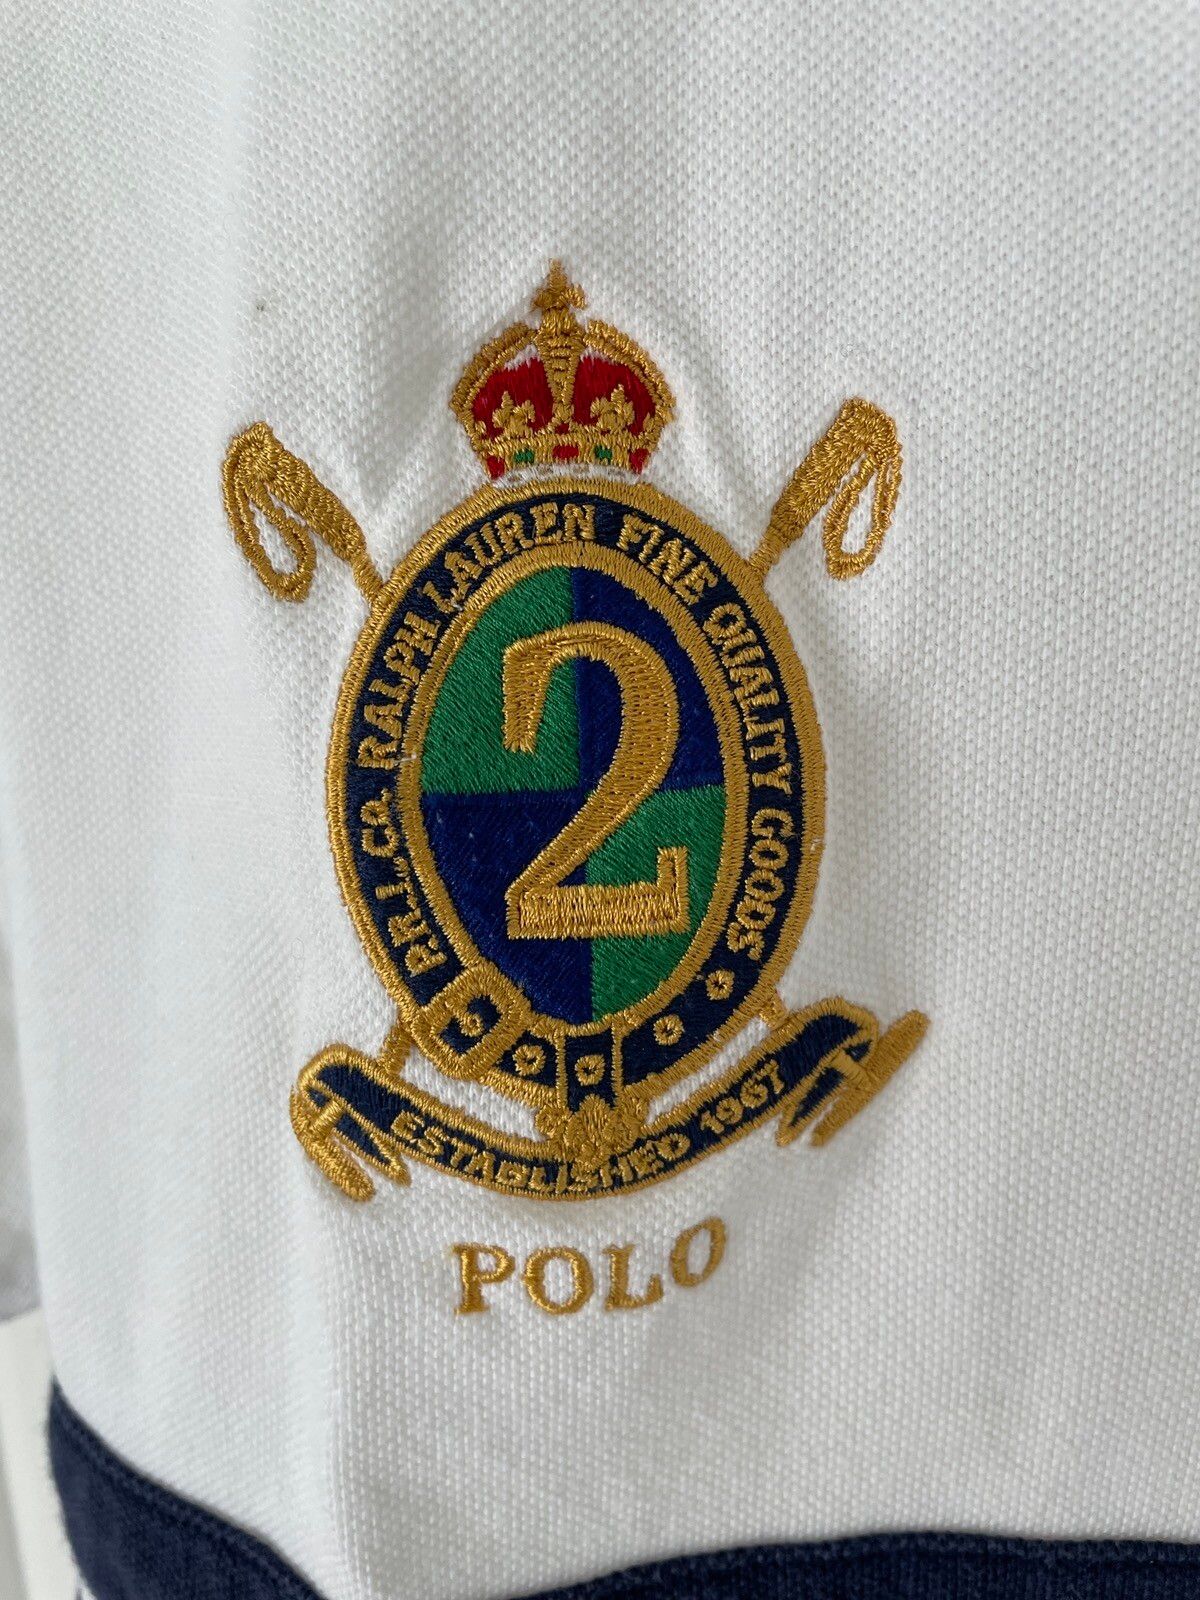 Polo Ralph Lauren CHIEF KEEF X Ralph Lauren polo shirt Size US M / EU 48-50 / 2 - 3 Thumbnail